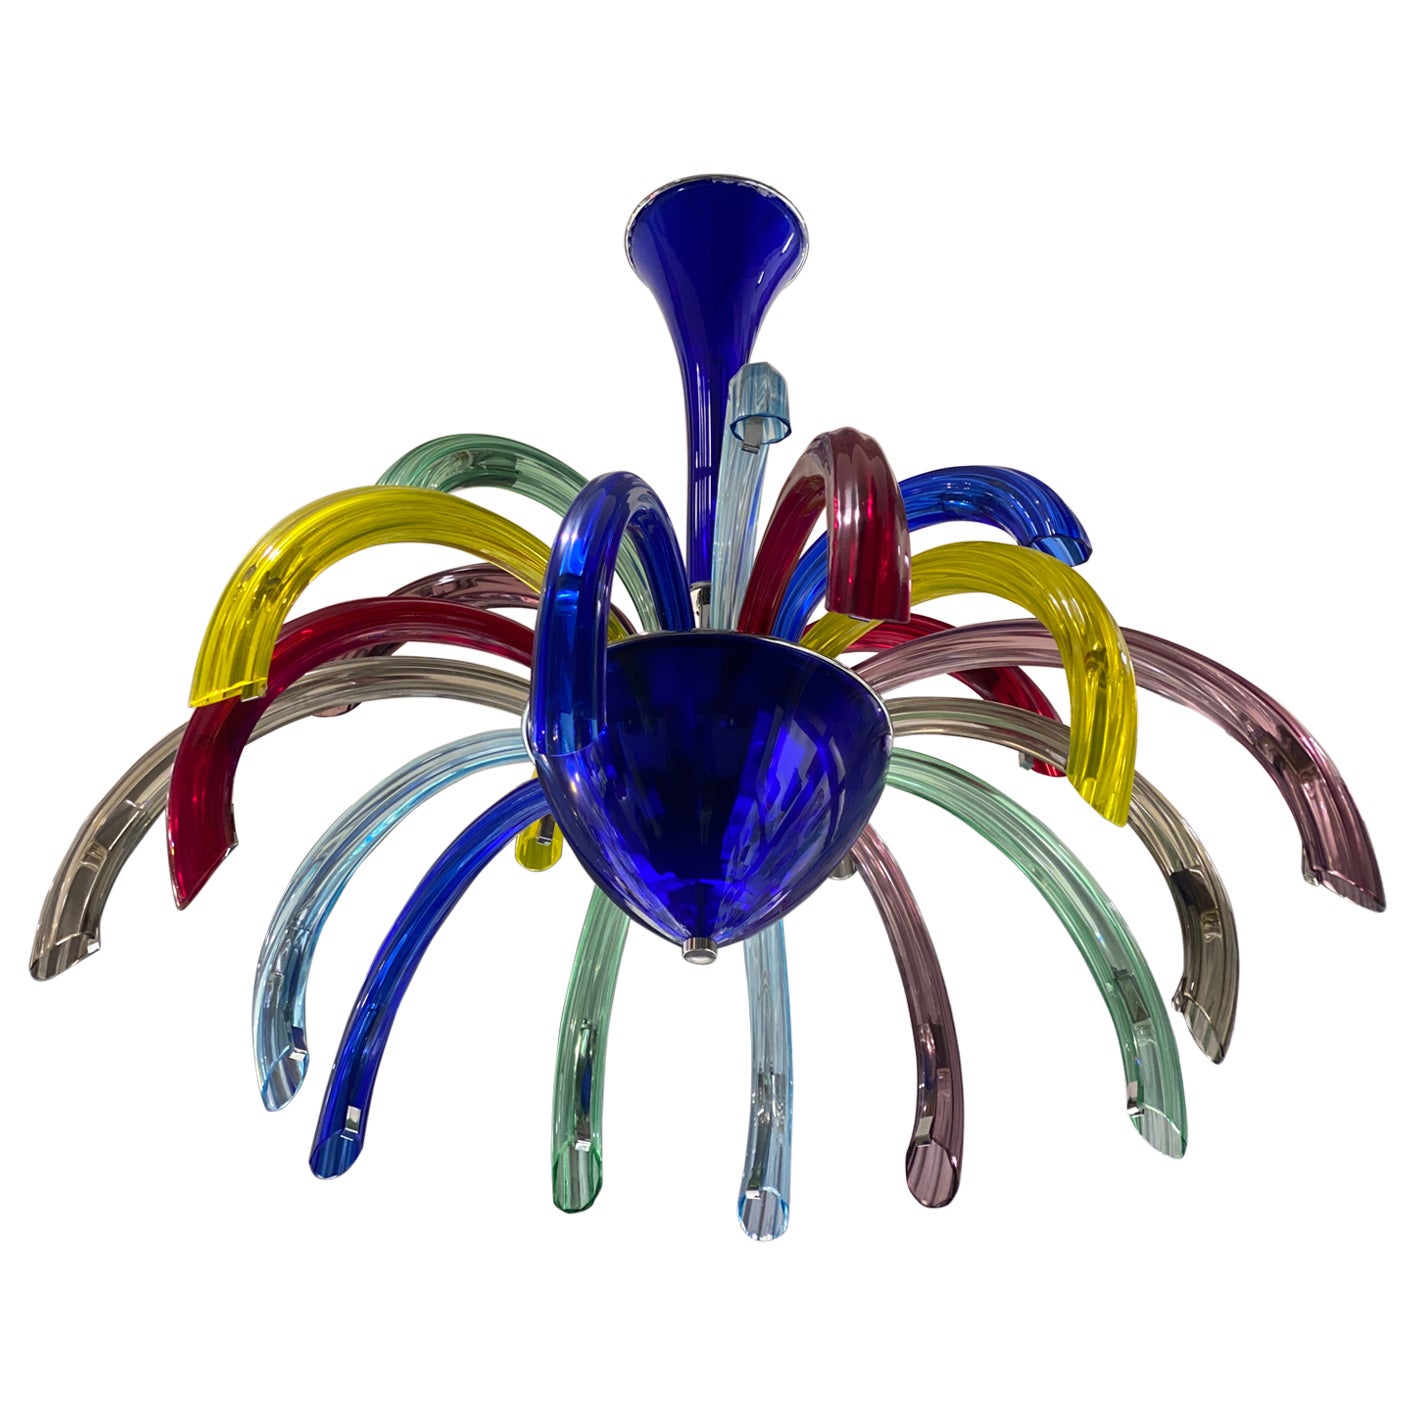 Feuerwerk bunter mundgeblasener Murano-Glas-Kronleuchter.
 Der Preis gilt für einen Artikel.
 Auch als Paar erhältlich.
Wunderschönes, raffiniertes Stück, das sich mit modernen Möbeln kombinieren lässt.